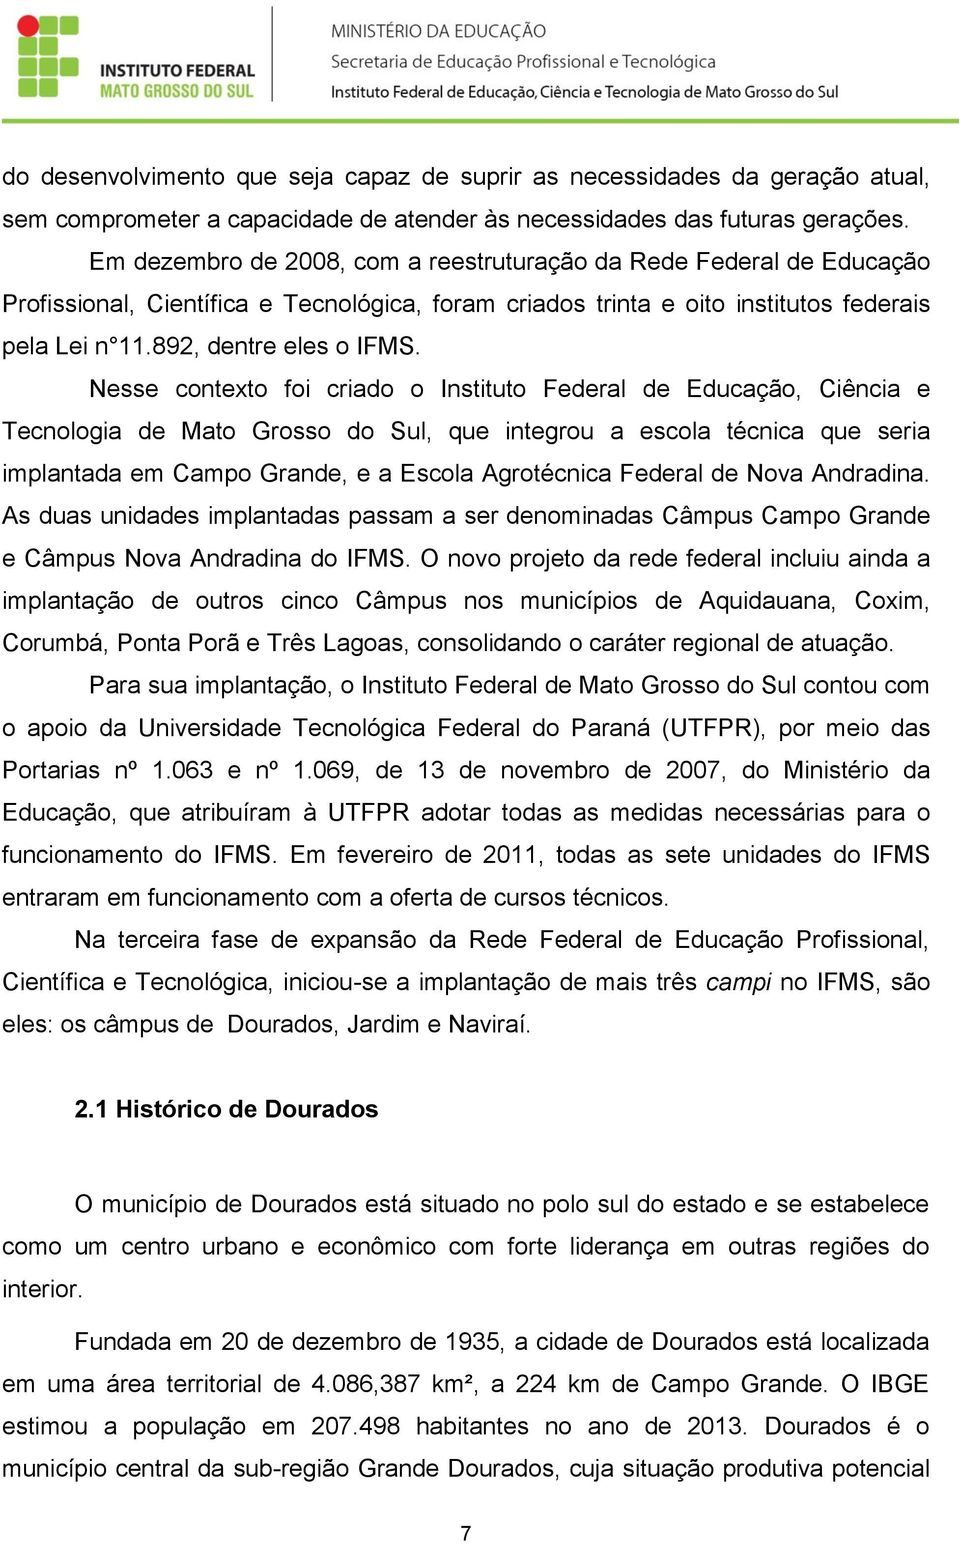 Nesse contexto foi criado o Instituto Federal de Educação, Ciência e Tecnologia de Mato Grosso do Sul, que integrou a escola técnica que seria implantada em Campo Grande, e a Escola Agrotécnica